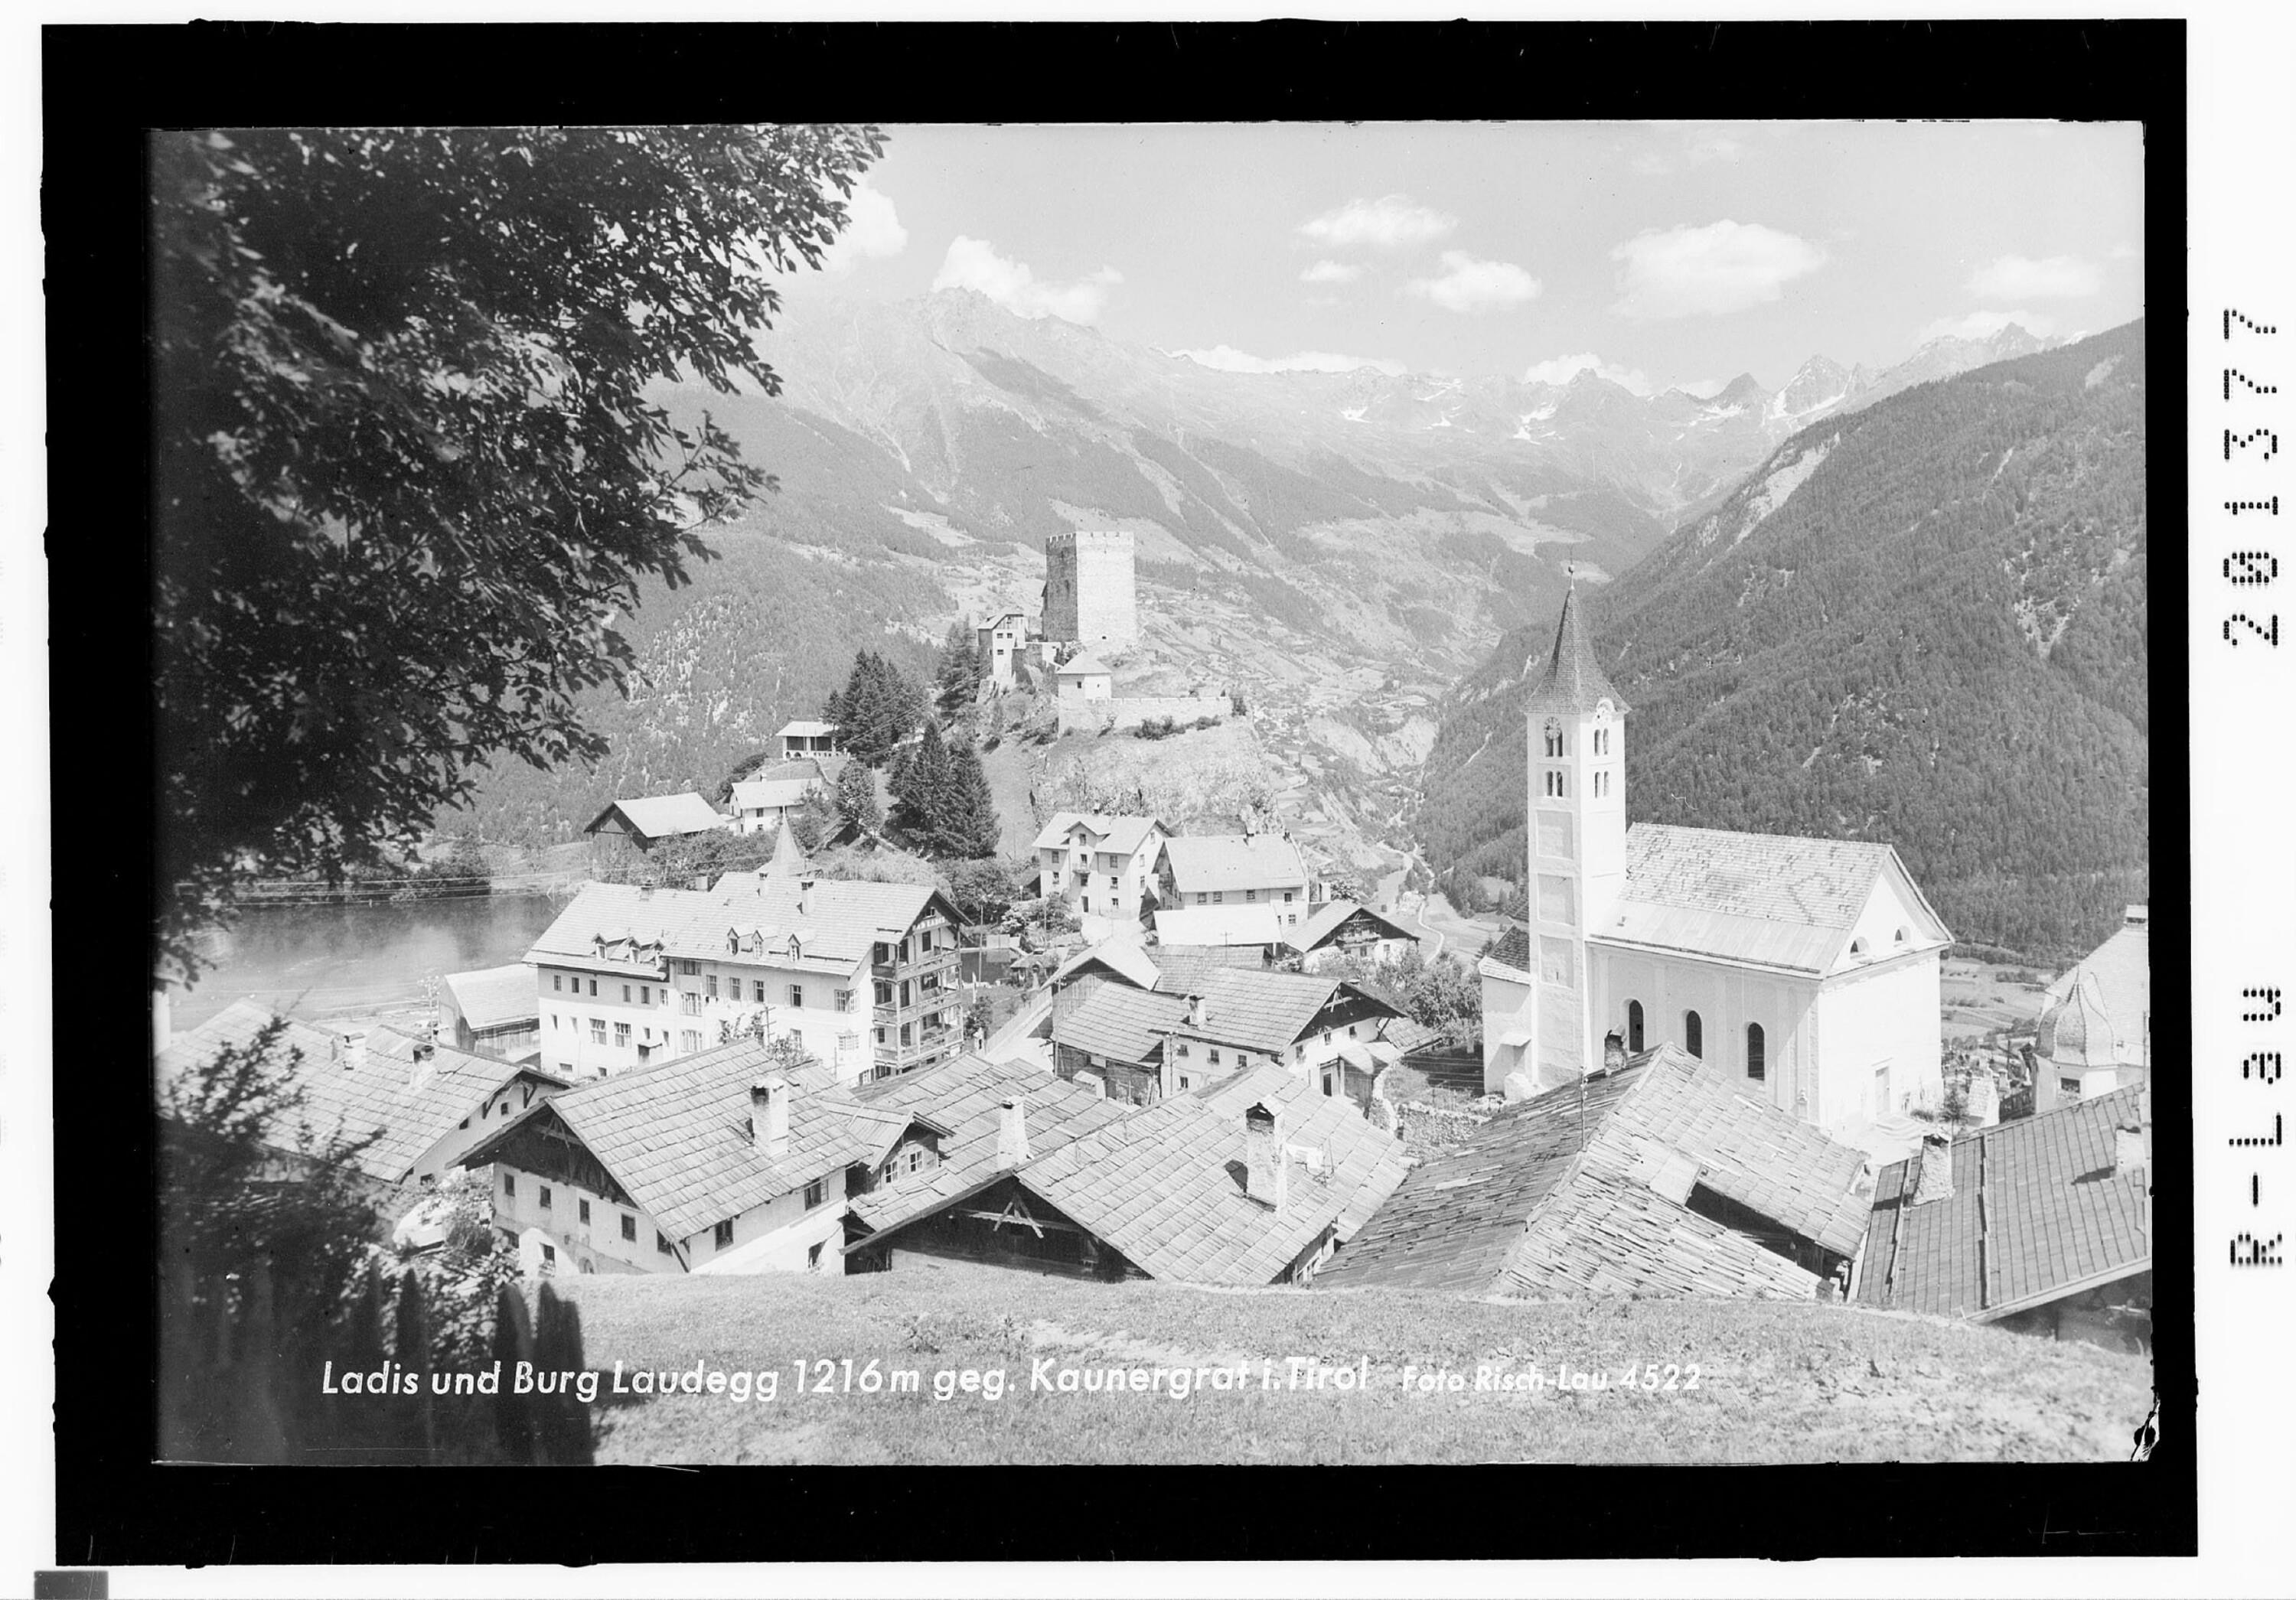 Ladis und Burg Laudegg 1216 m gegen Kaunergrat in Tirol></div>


    <hr>
    <div class=